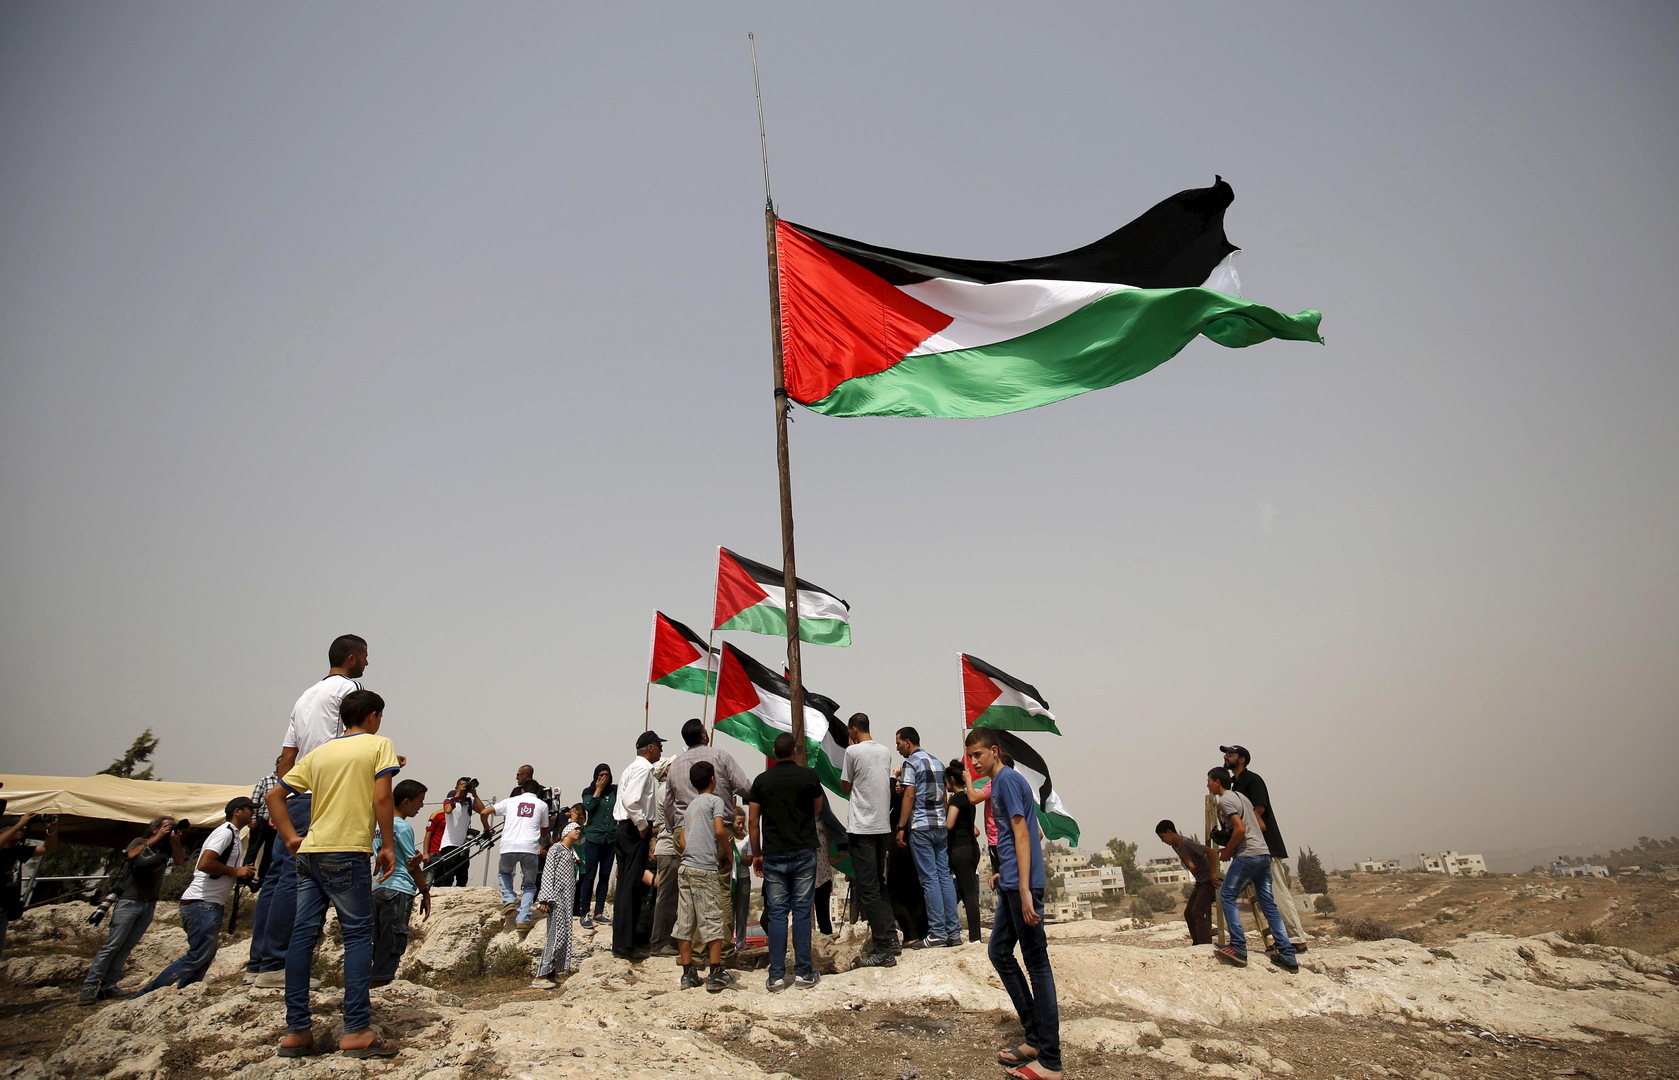 Есть страна палестина. Палестина. Палестинский флаг. Палестинская Национальная автономия. Палестинский праздник.